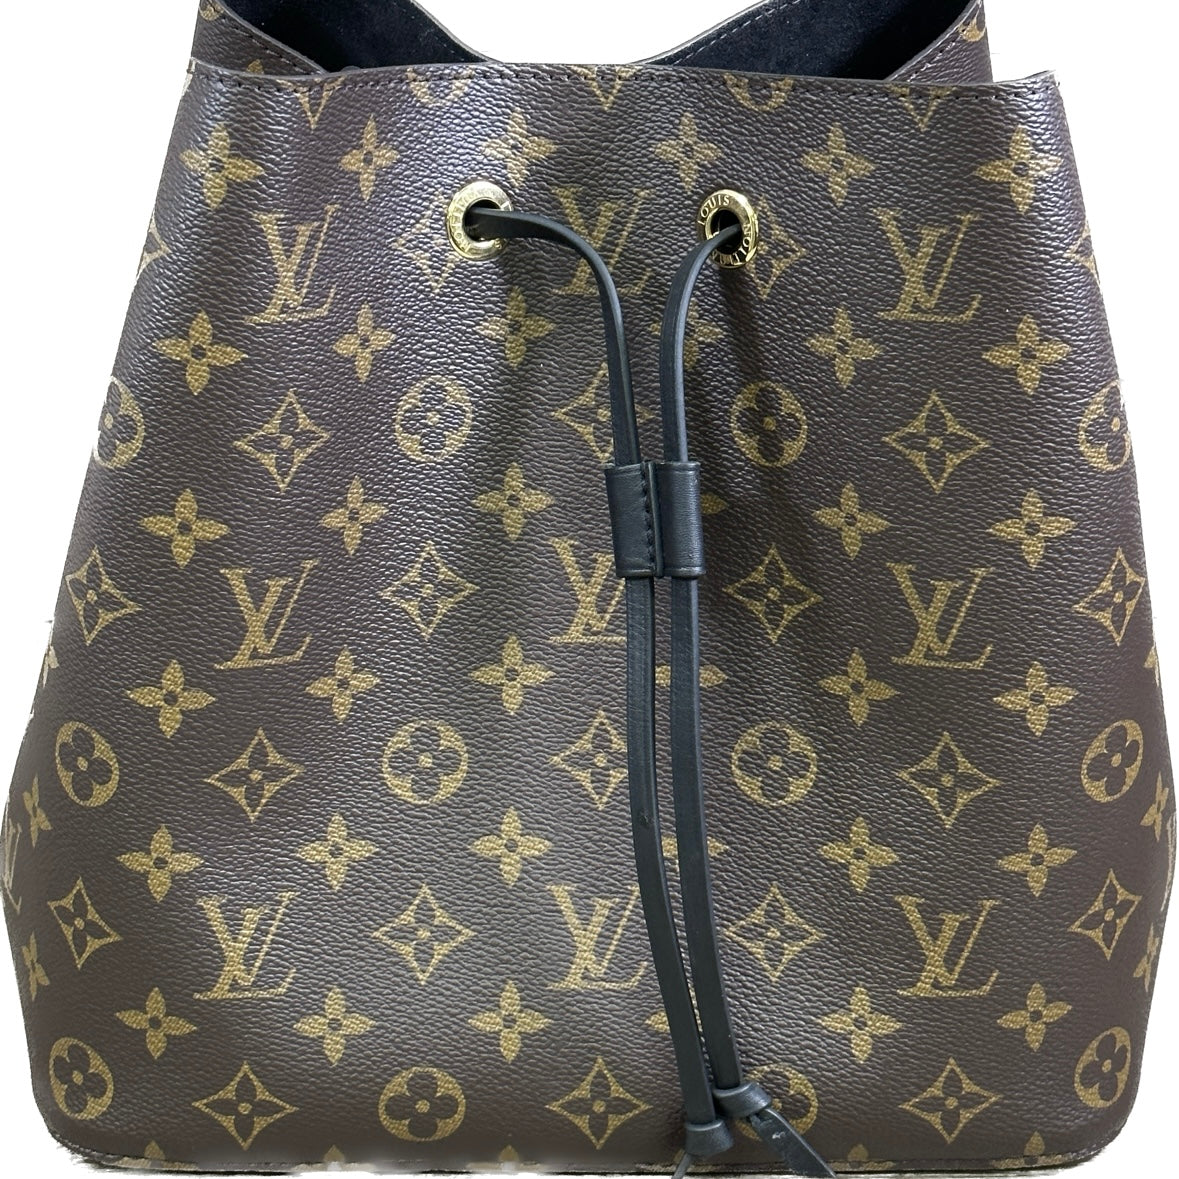 Louis Vuitton Handbags for sale in Mexico City, Mexico, Facebook  Marketplace